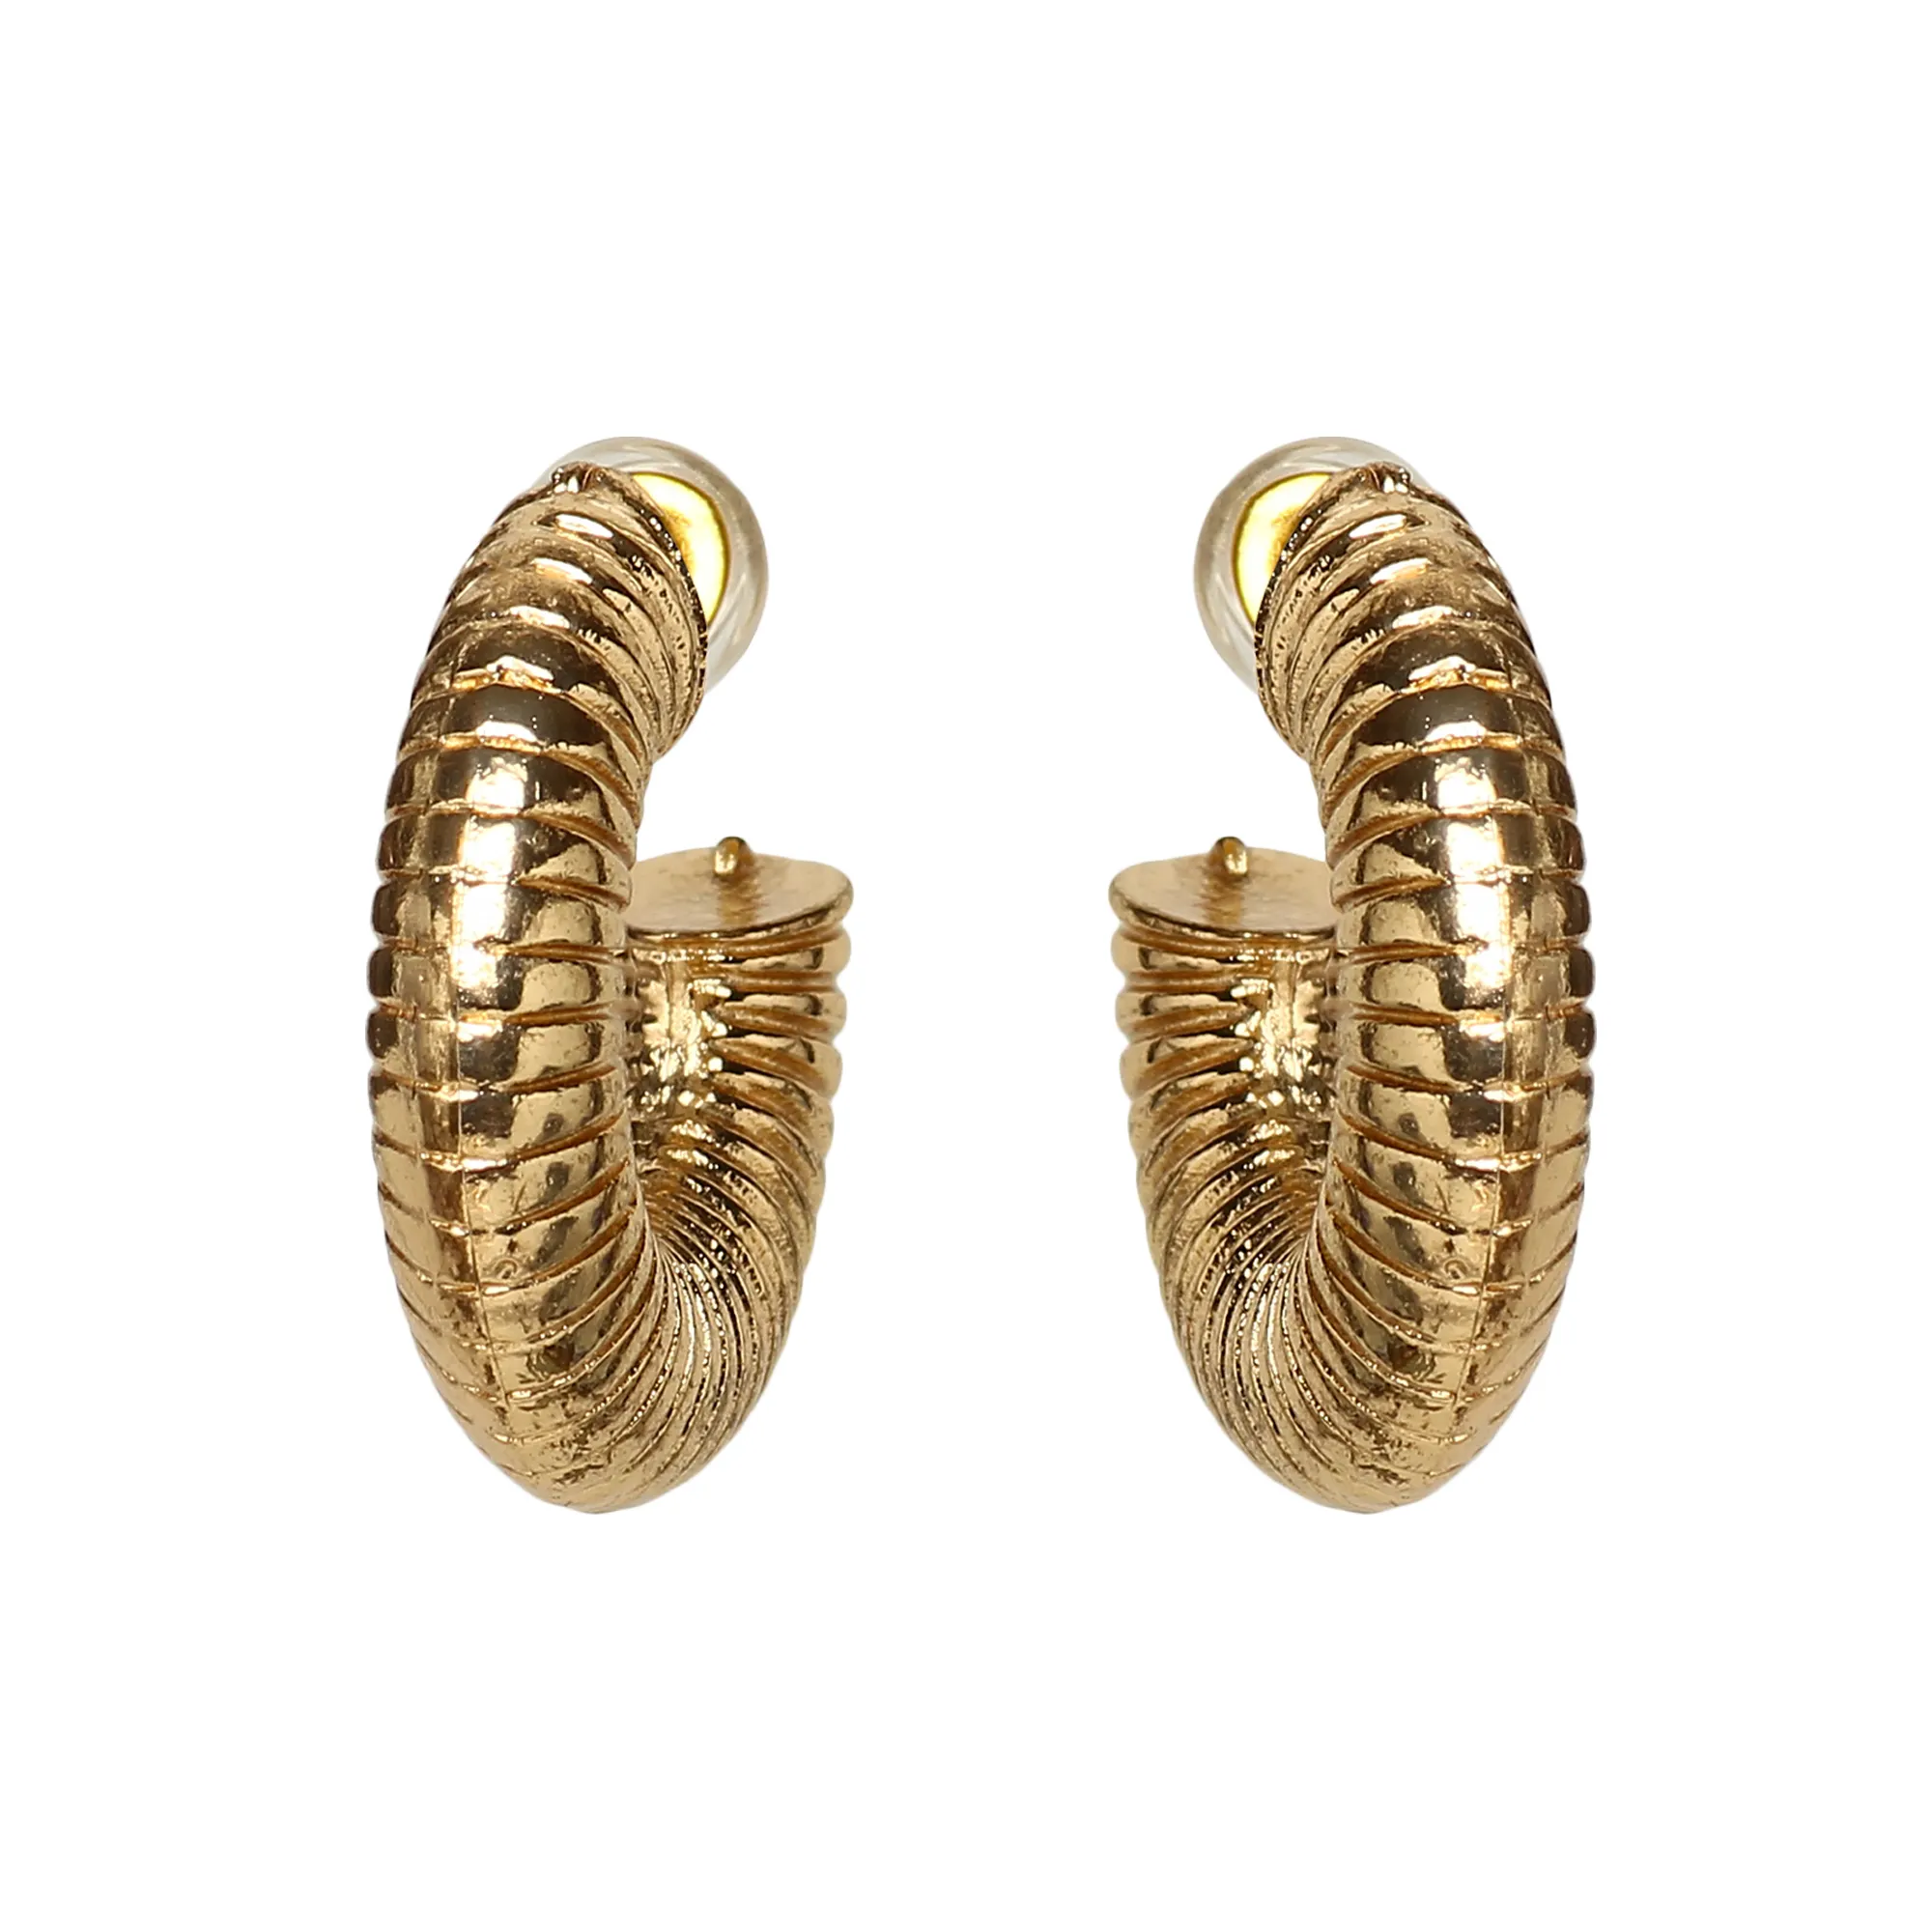 Classic Ear Clips Earring Thread Type Earrings New Design Earring for Women And Girl - Shj-7203